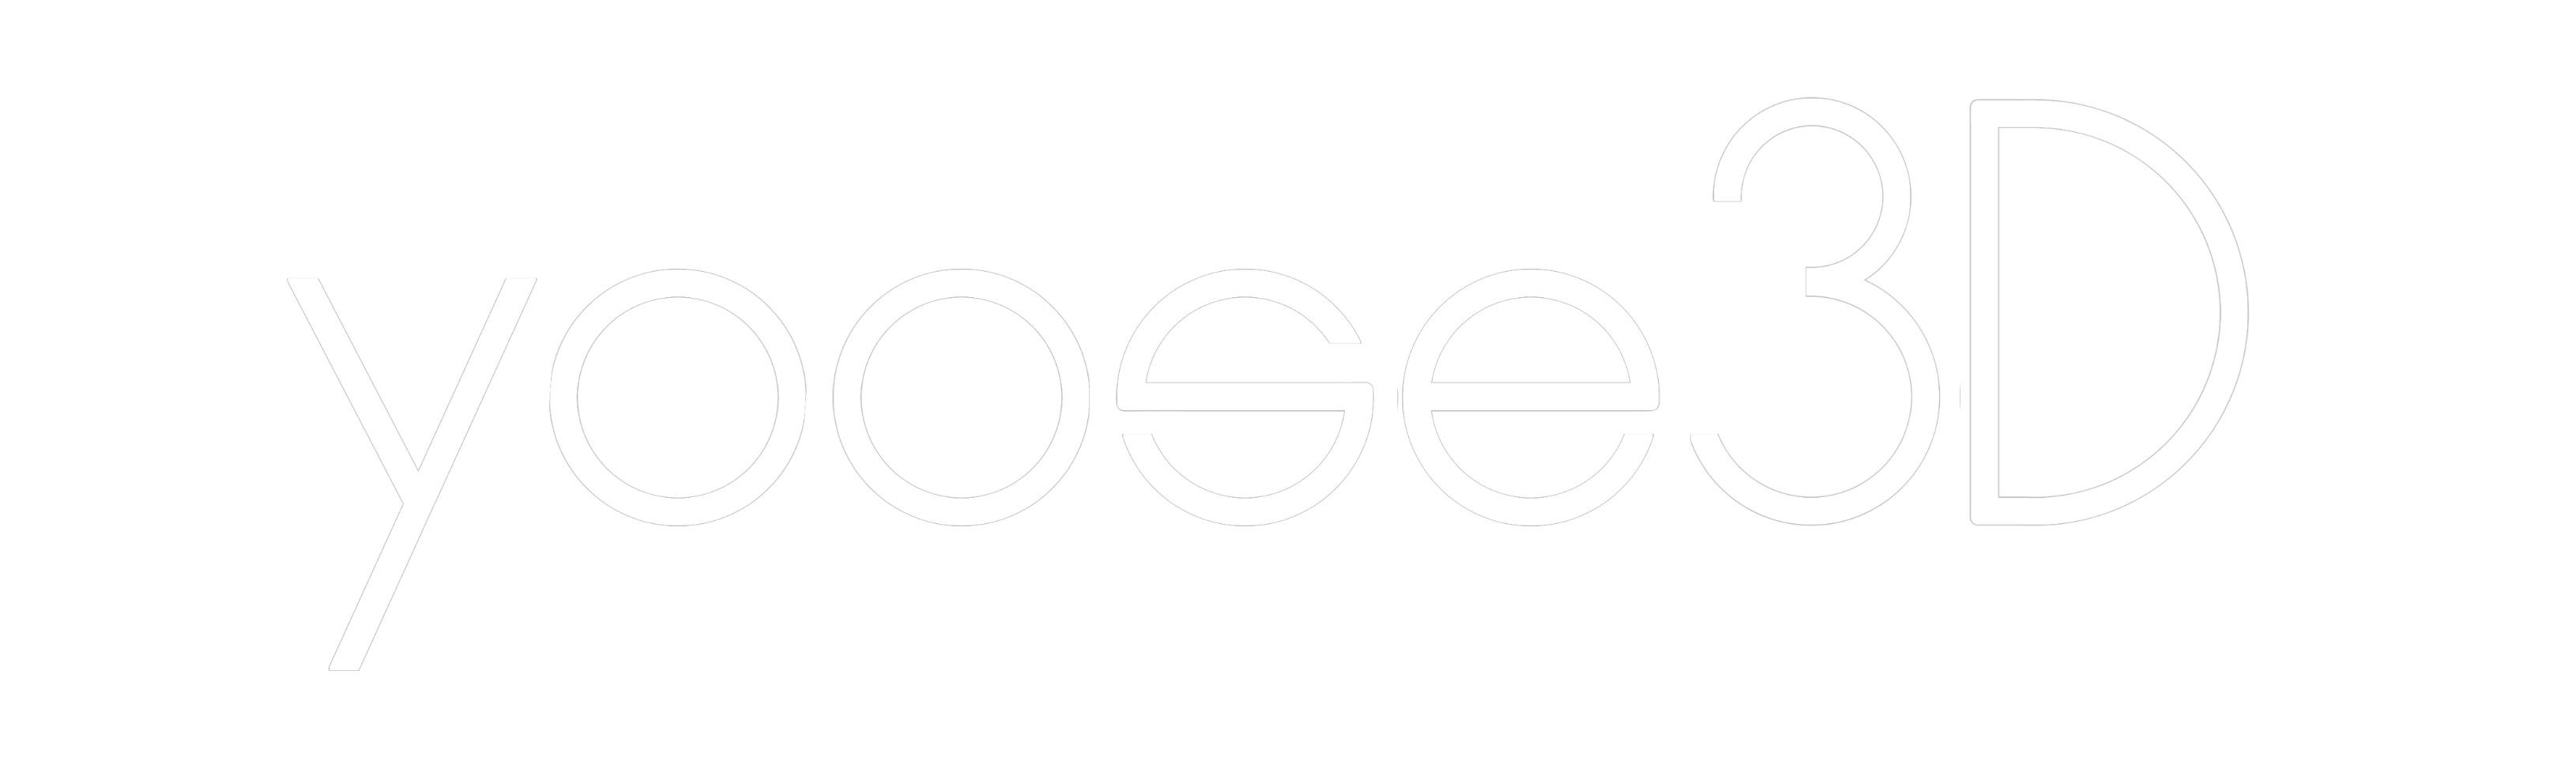 yoose3D logo